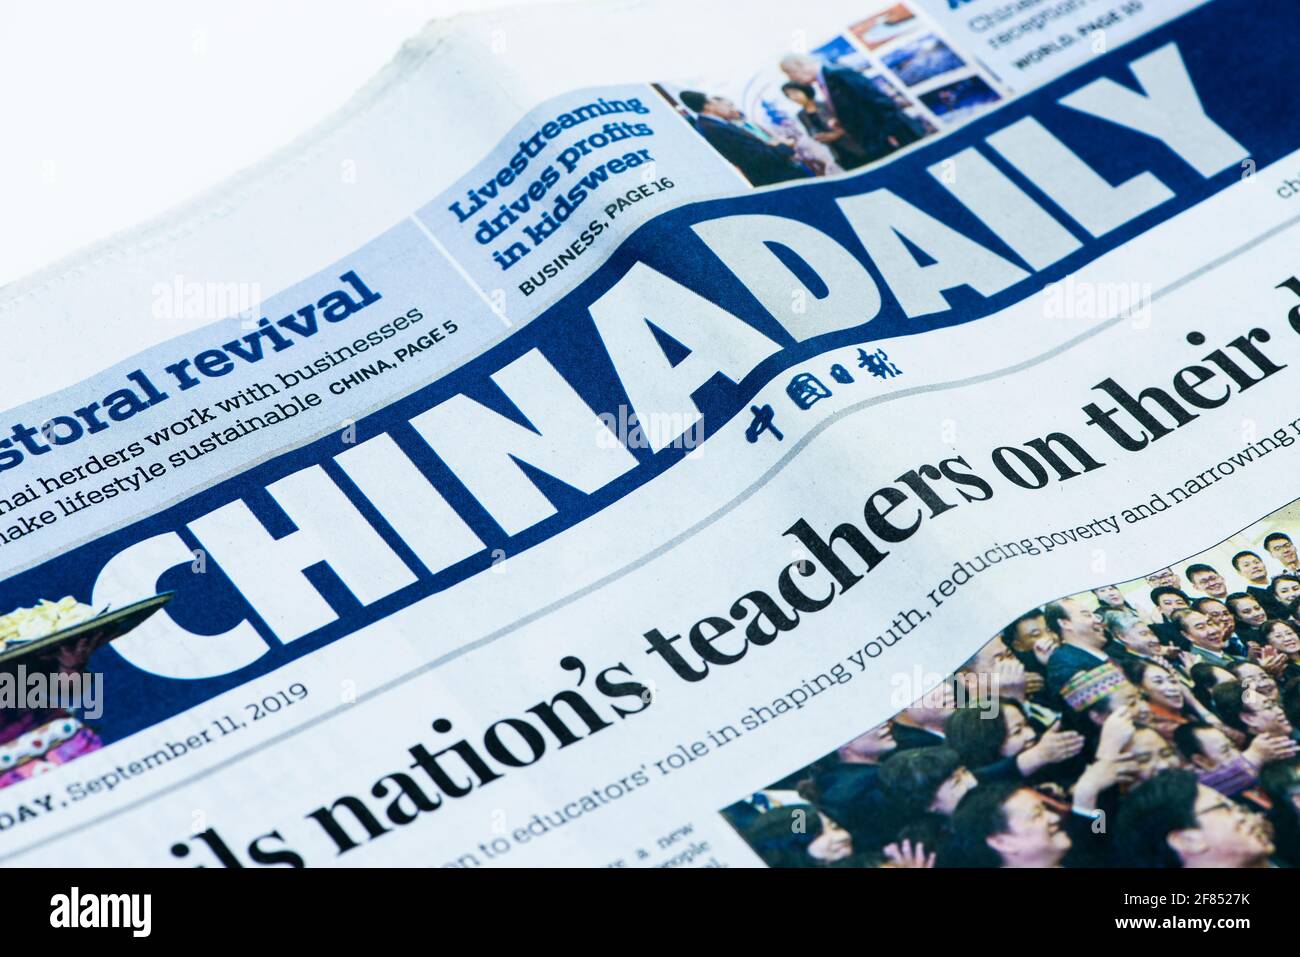 China Daily, eine englischsprachige Zeitung, die von der Abteilung für Öffentlichkeitsarbeit der Kommunistischen Partei Chinas (KPCh) veröffentlicht wurde Stockfoto